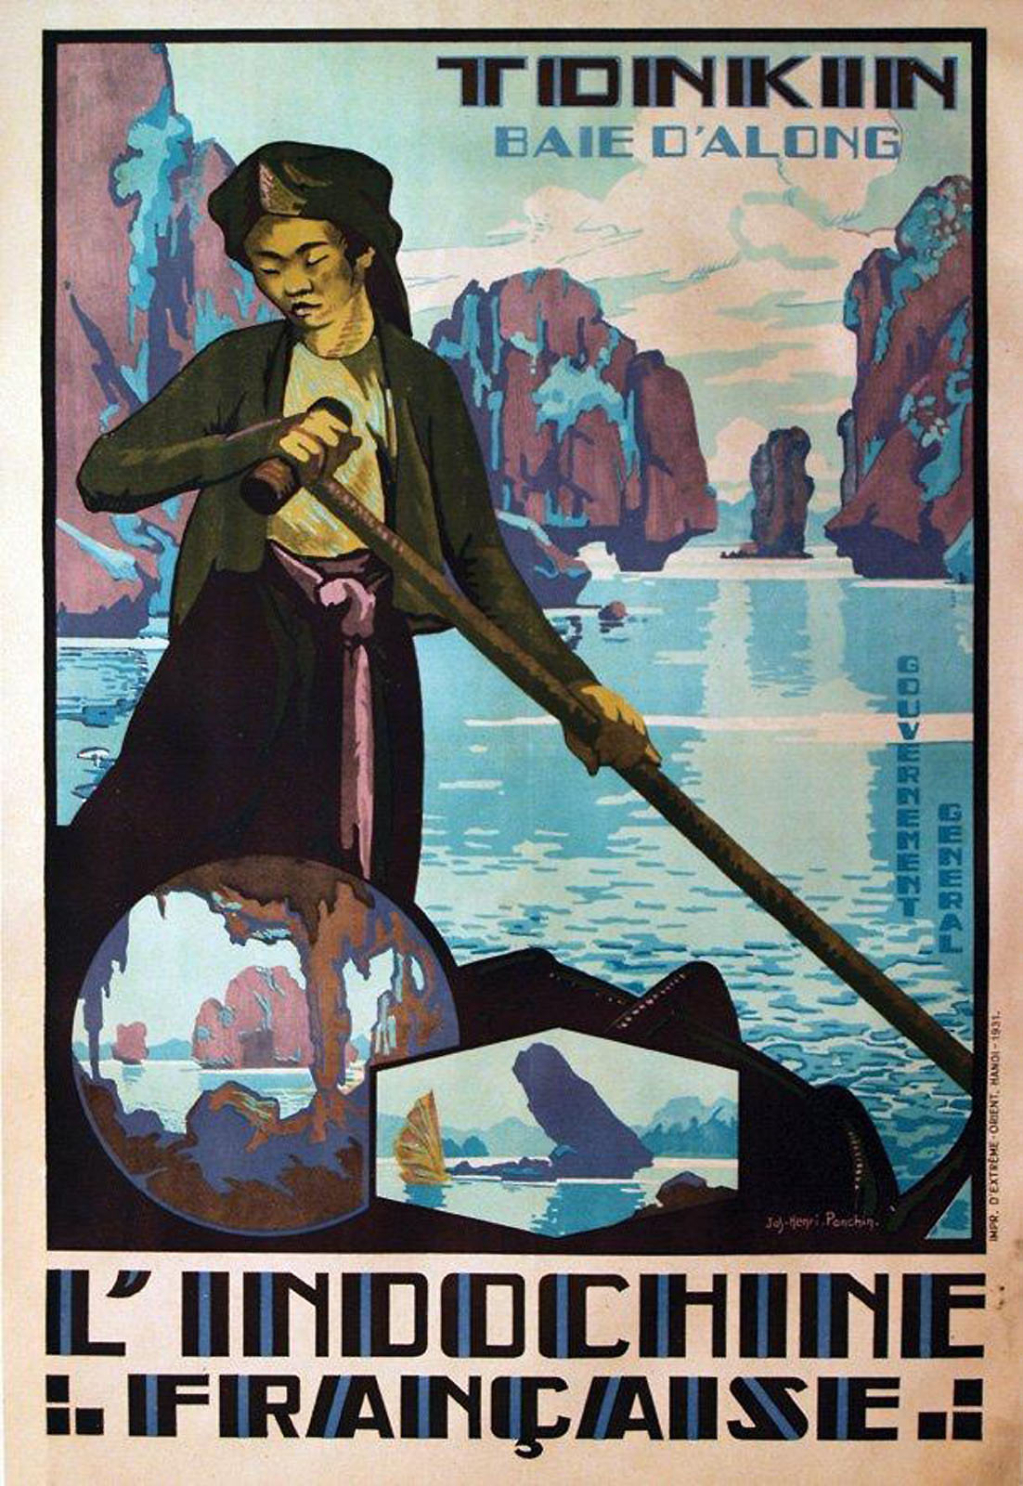 Vịnh Hạ Long được quảng bá trên trang bìa tạp chí Indochine (Đông Dương) năm 1931.